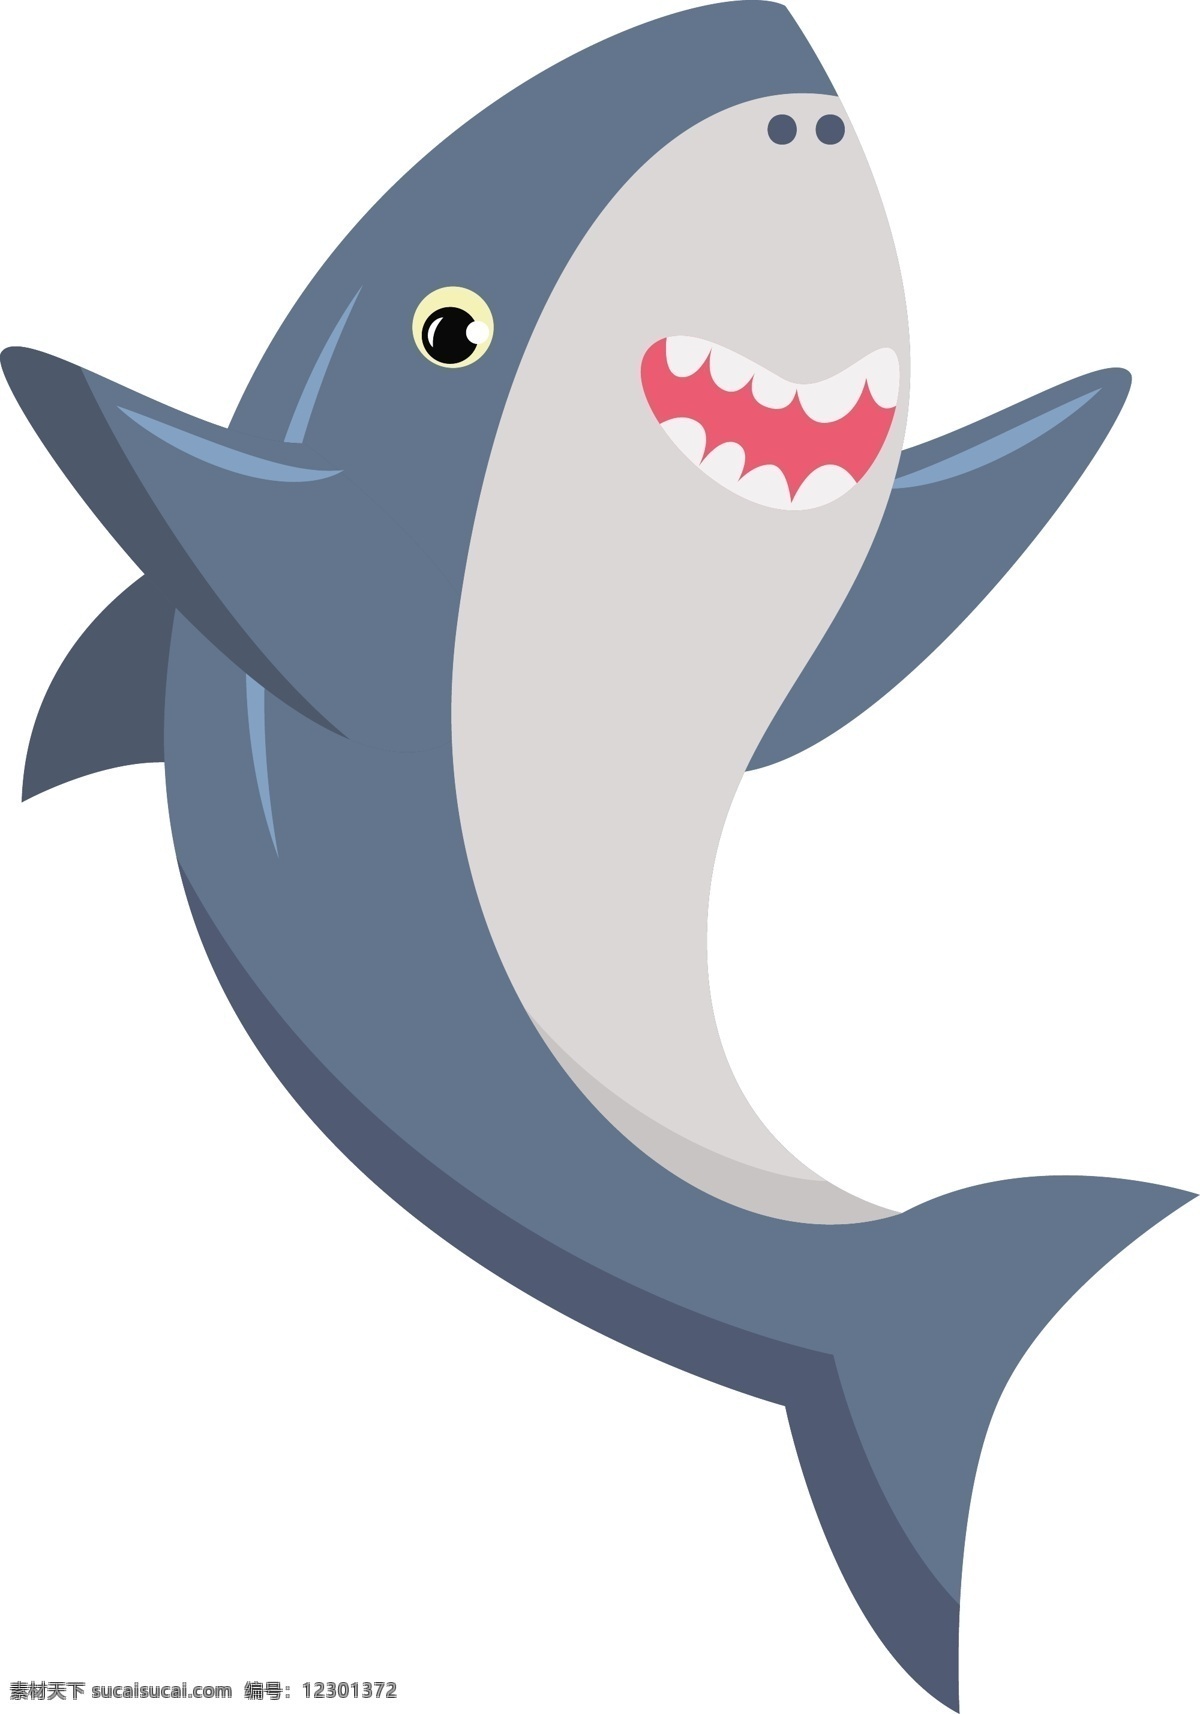 鲨鱼图片 鲨鱼 海洋生物 插图 手绘 插画 ai矢量